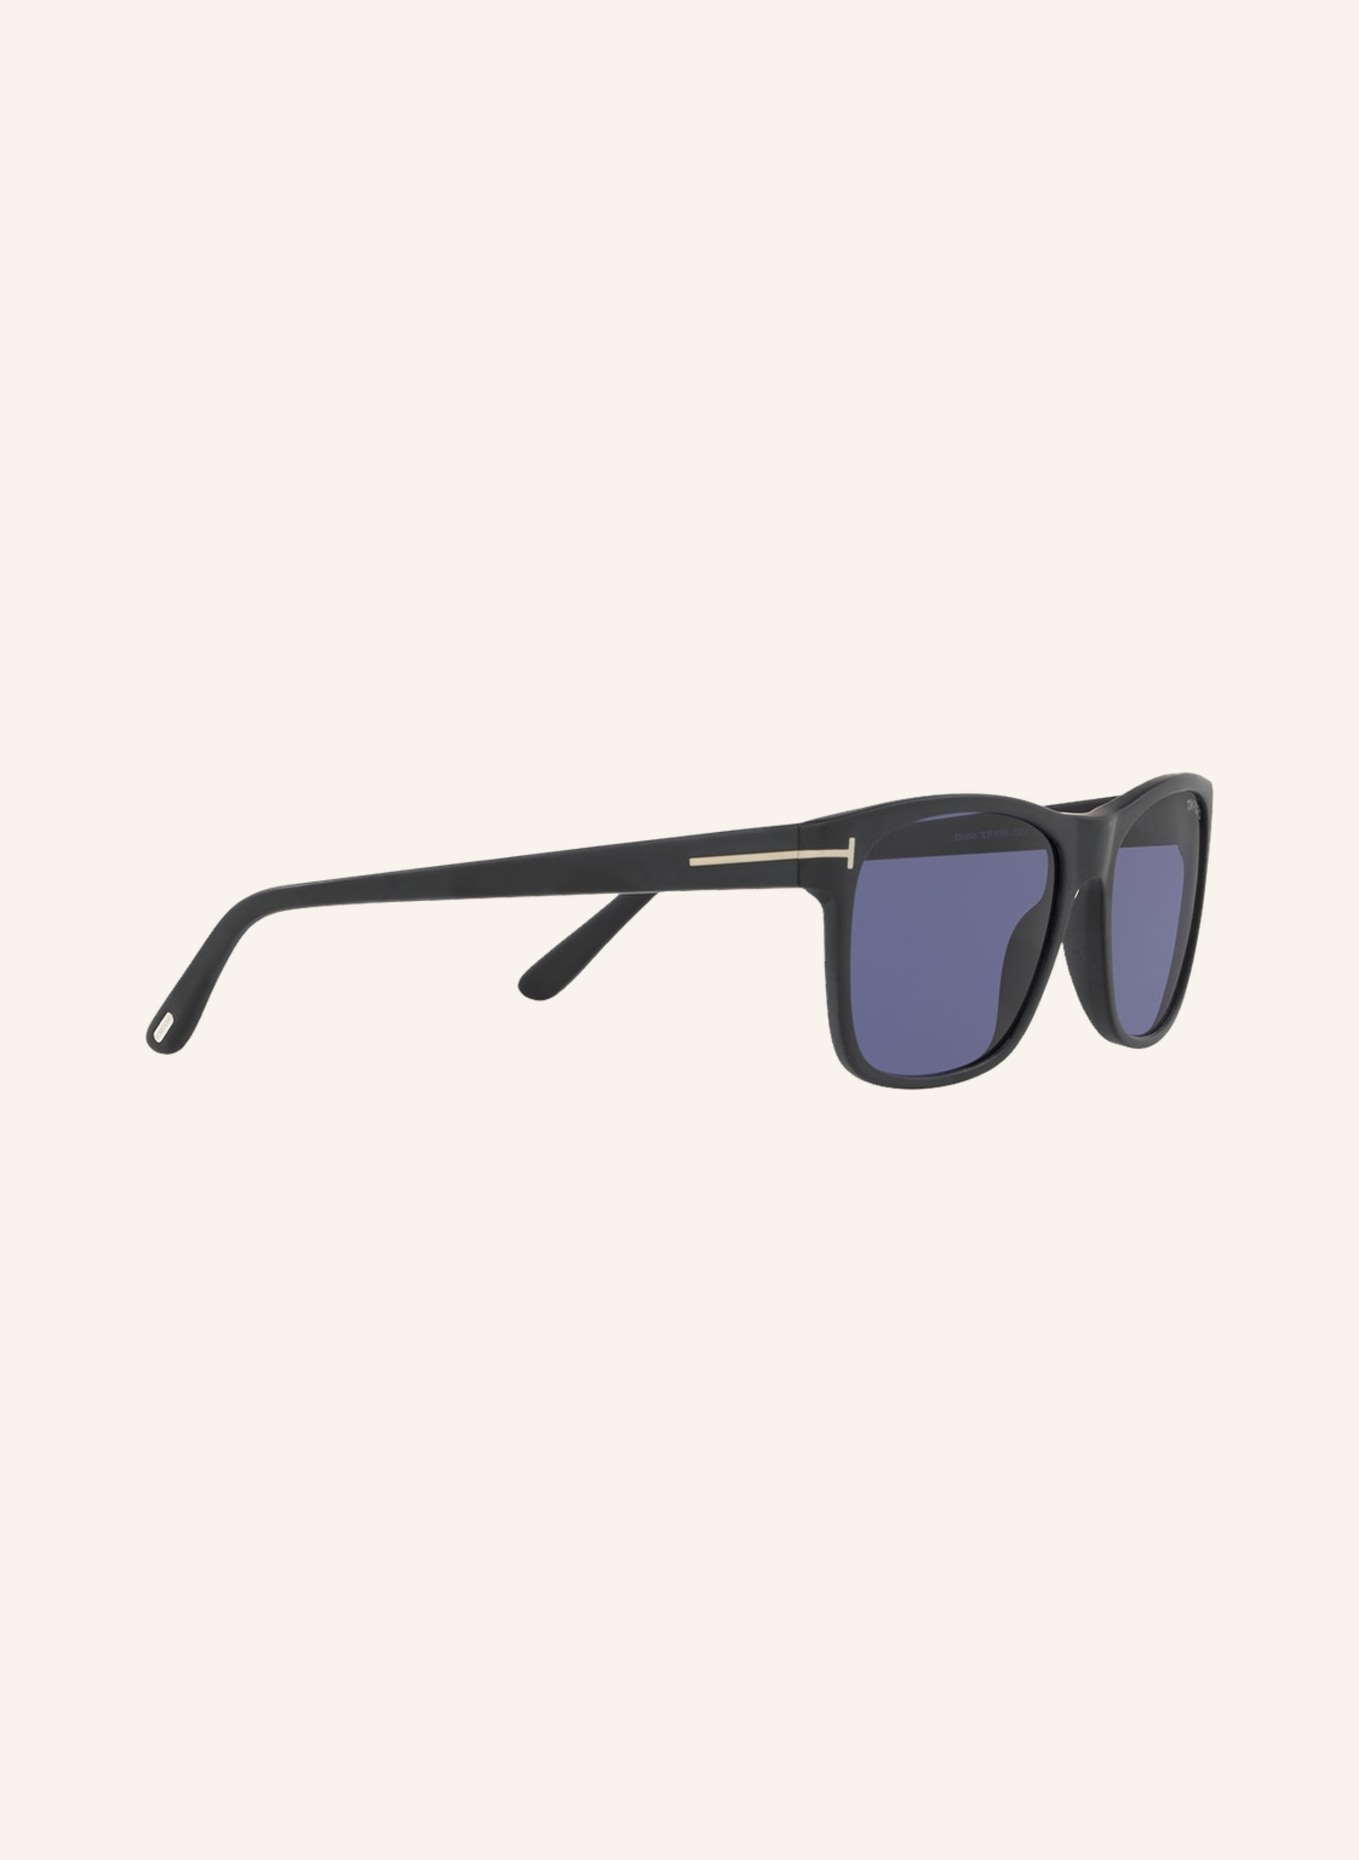 TOM FORD Sunglasses TR001050 GIULIO, Color: 1220B1 - MATTE BLACK/ PURPLE (Image 3)